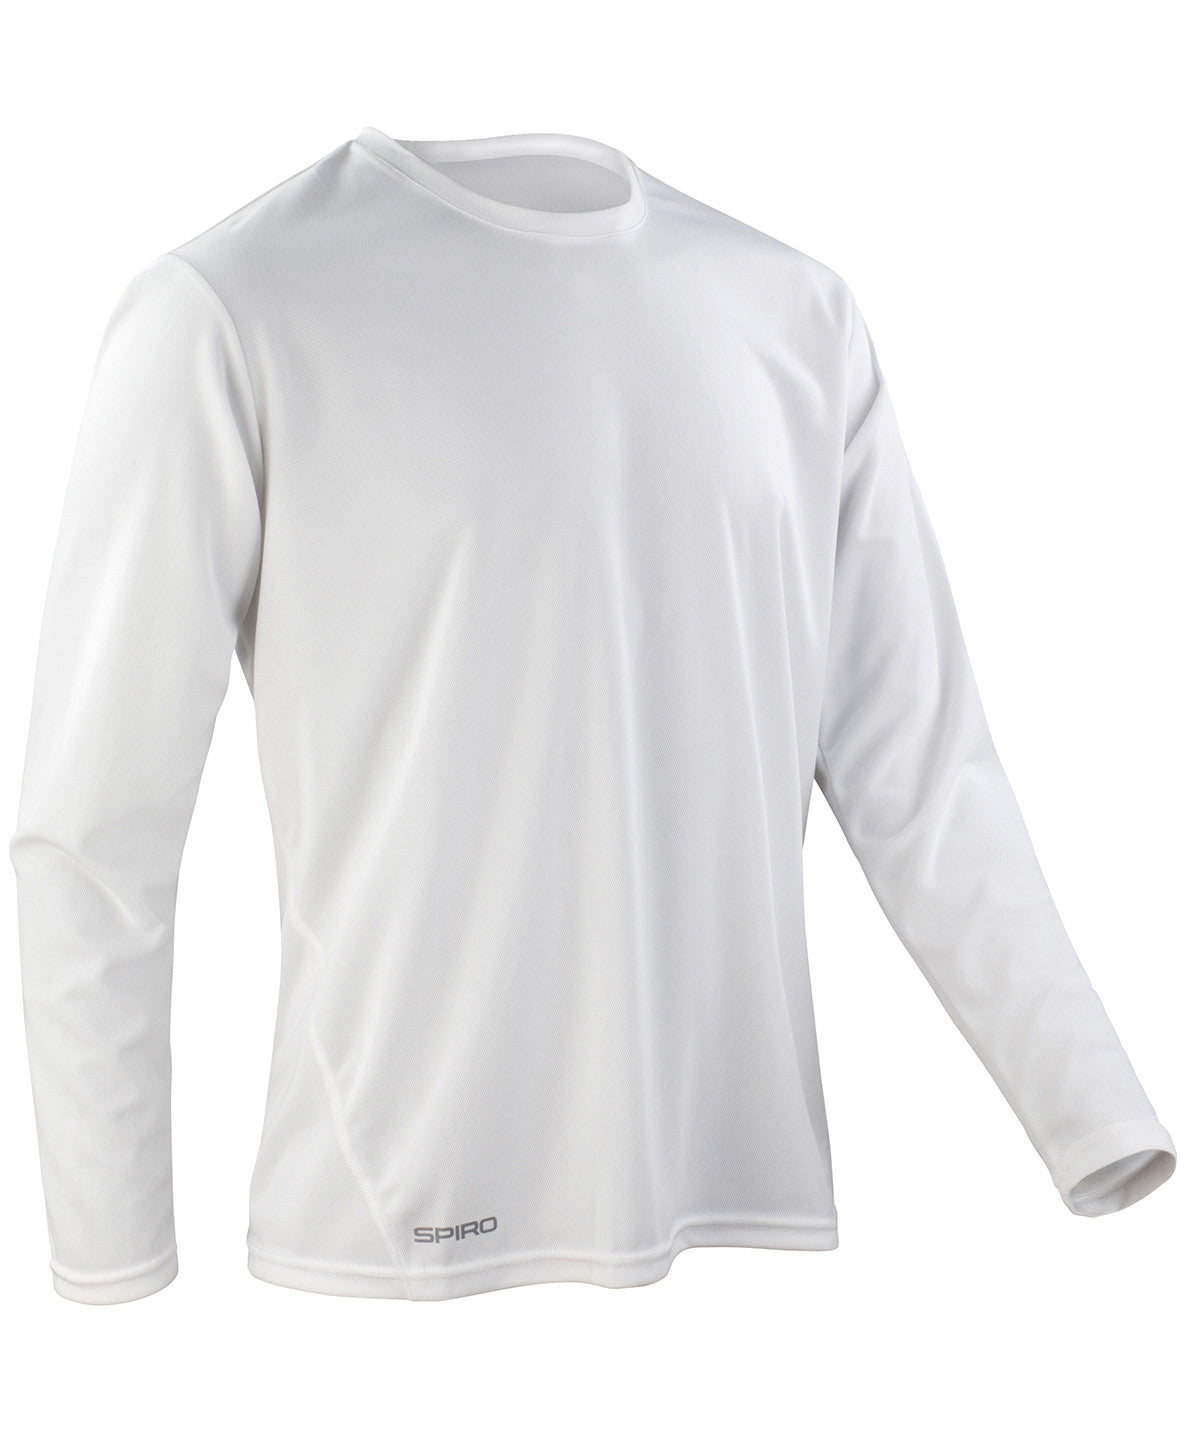 Stuttermabolir - Spiro Quick-dry Long Sleeve T-shirt